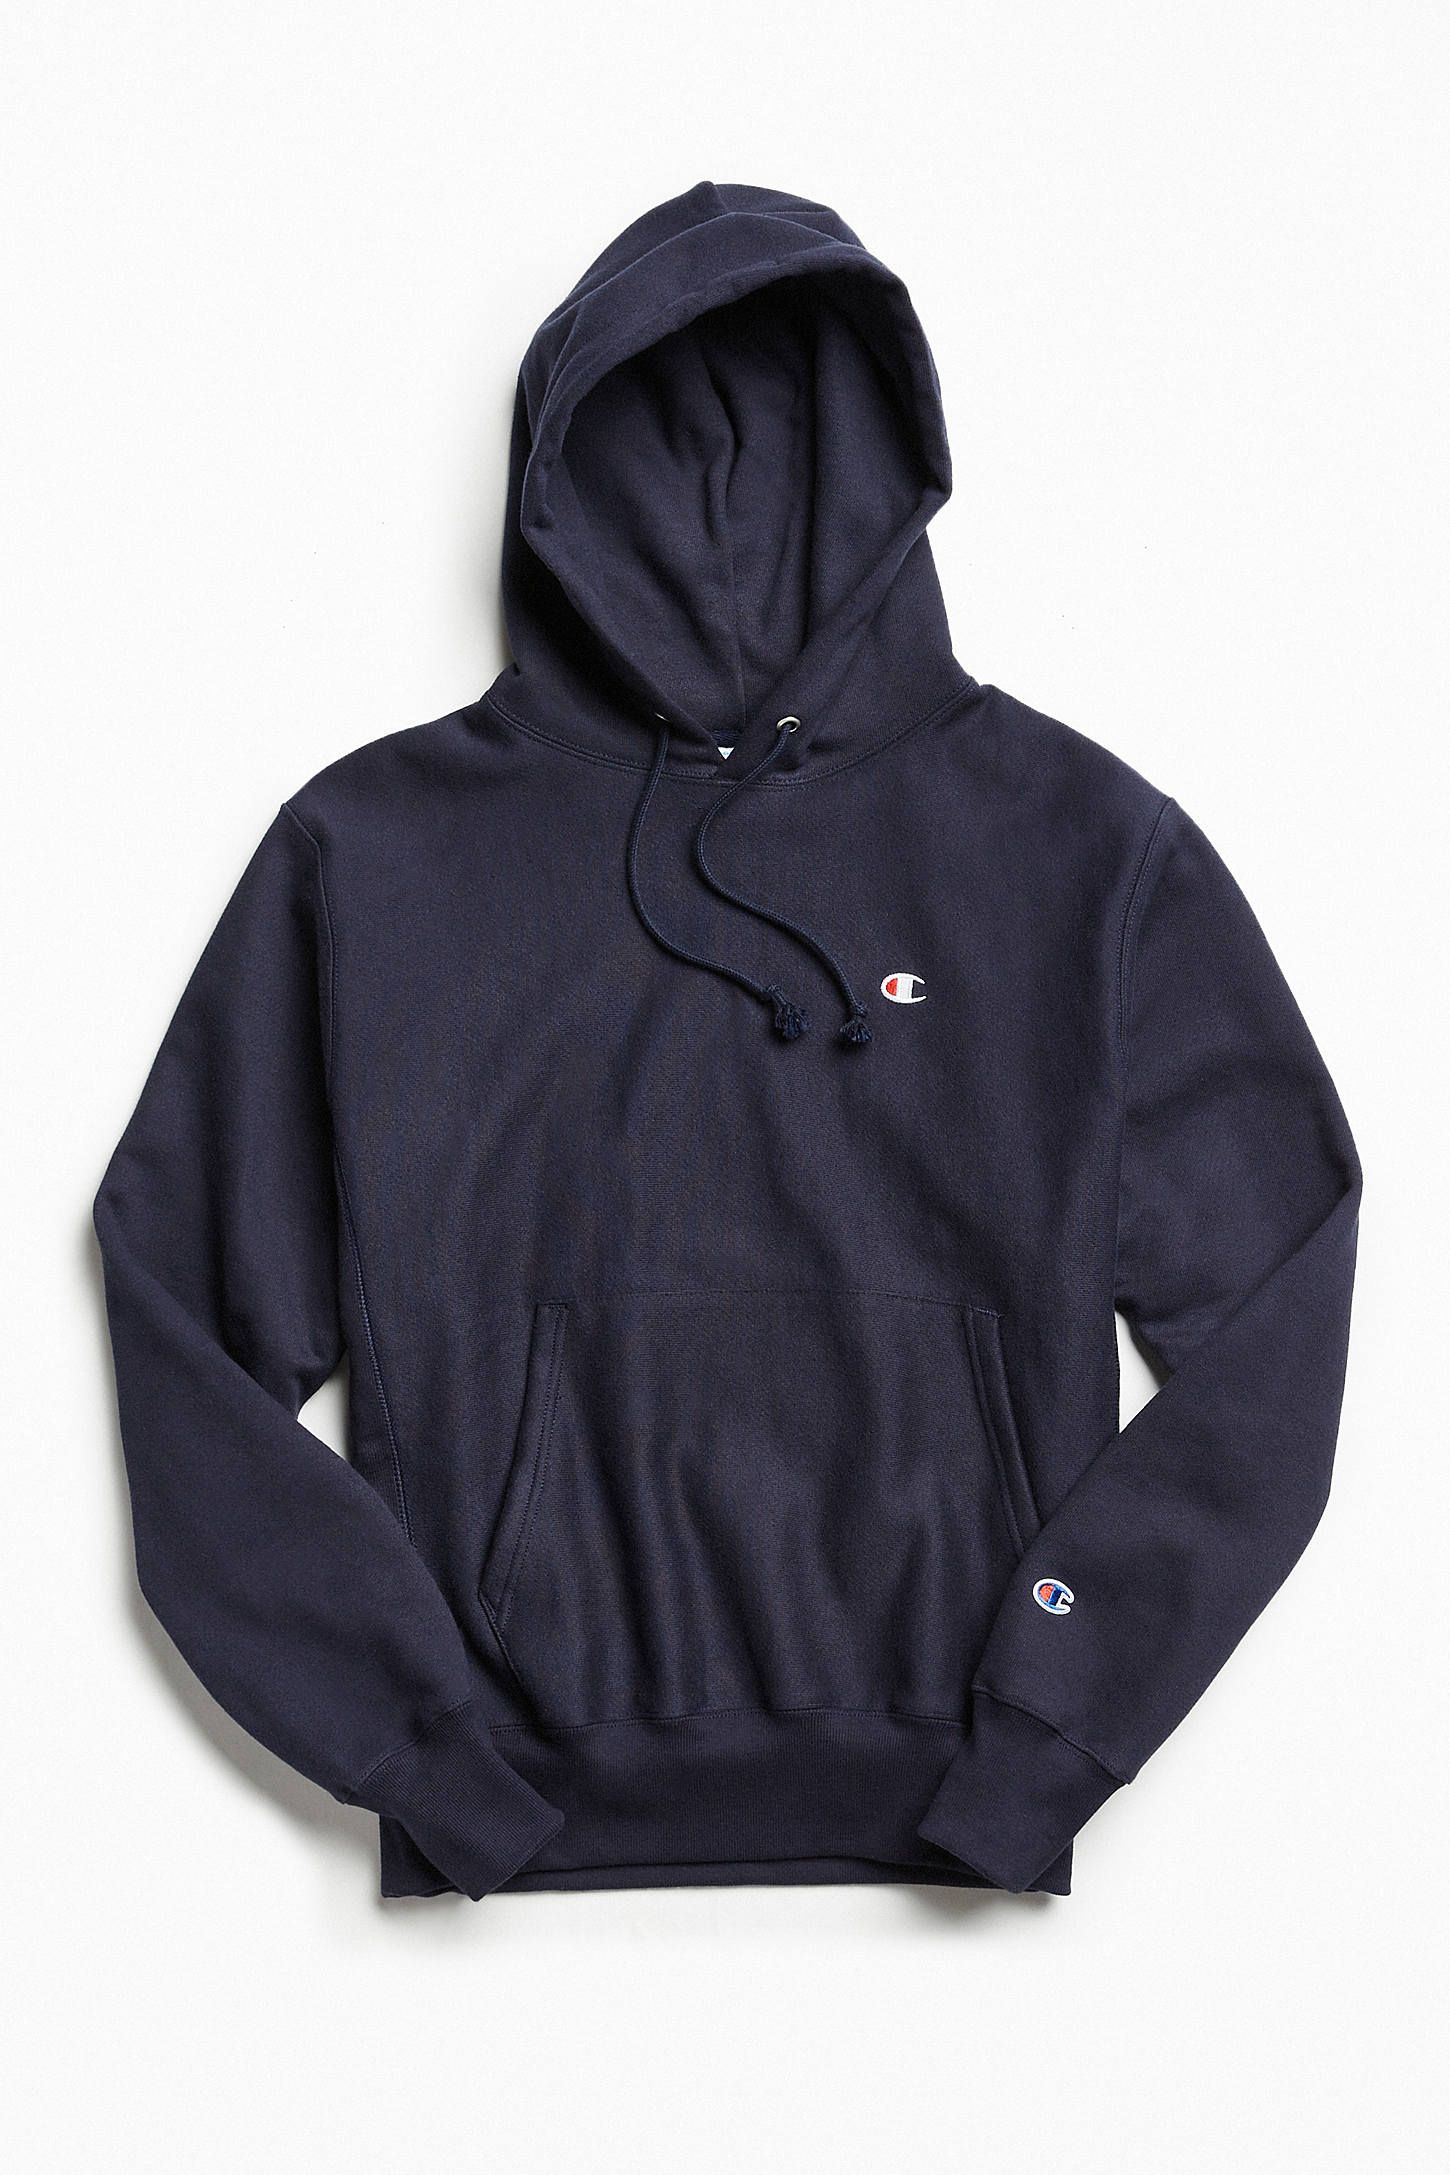 hoodie brands